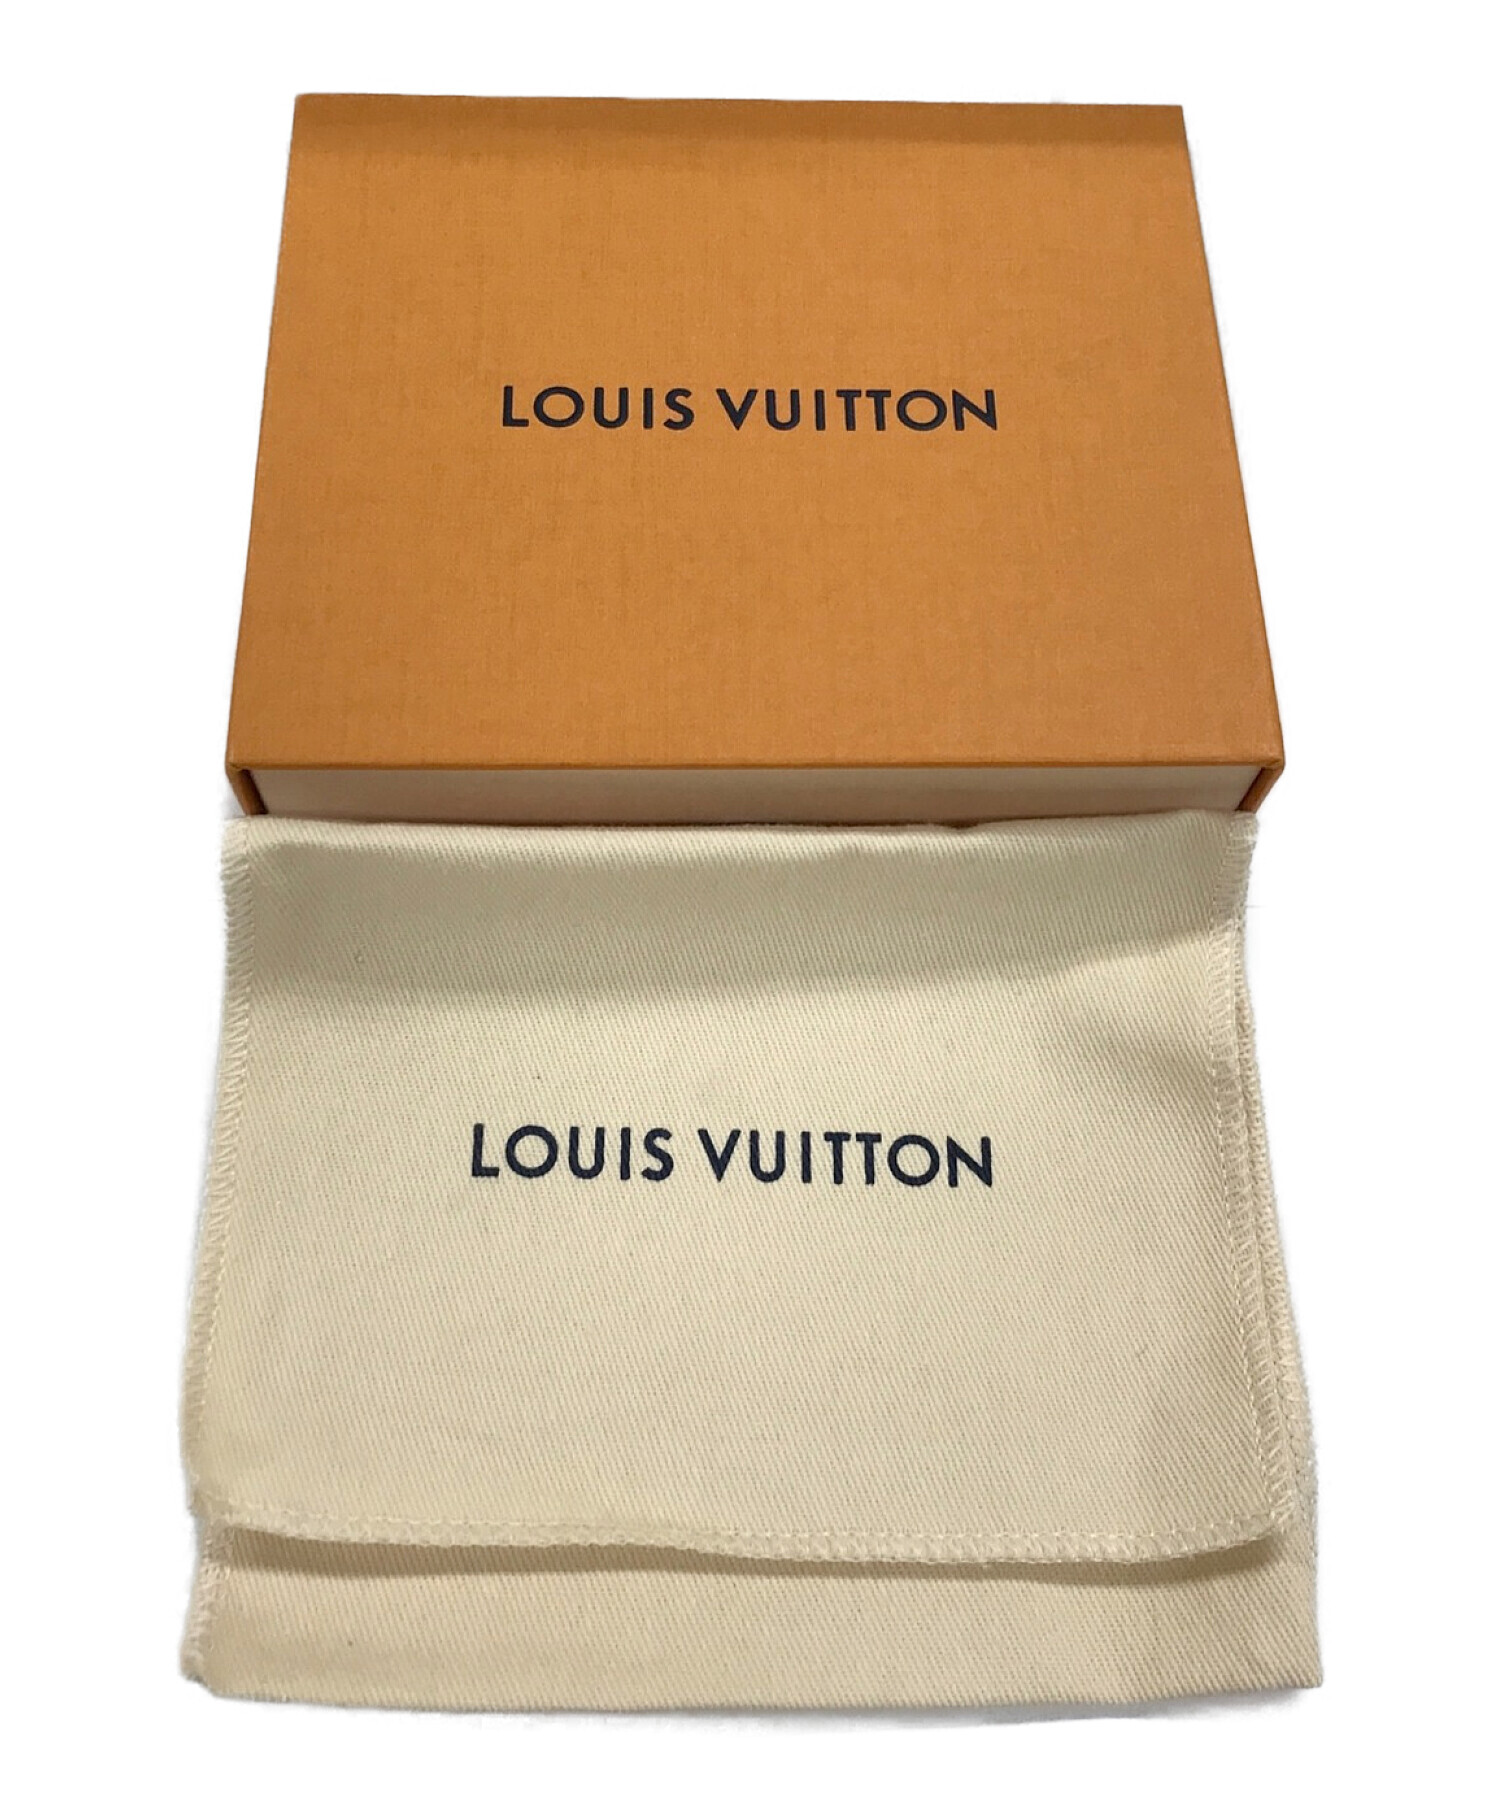 LOUIS VUITTON (ルイ ヴィトン) ポルトフォイユ・マイロックミーコンパクト 3つ折り財布 ブラック サイズ:実寸サイズにてご確認ください。